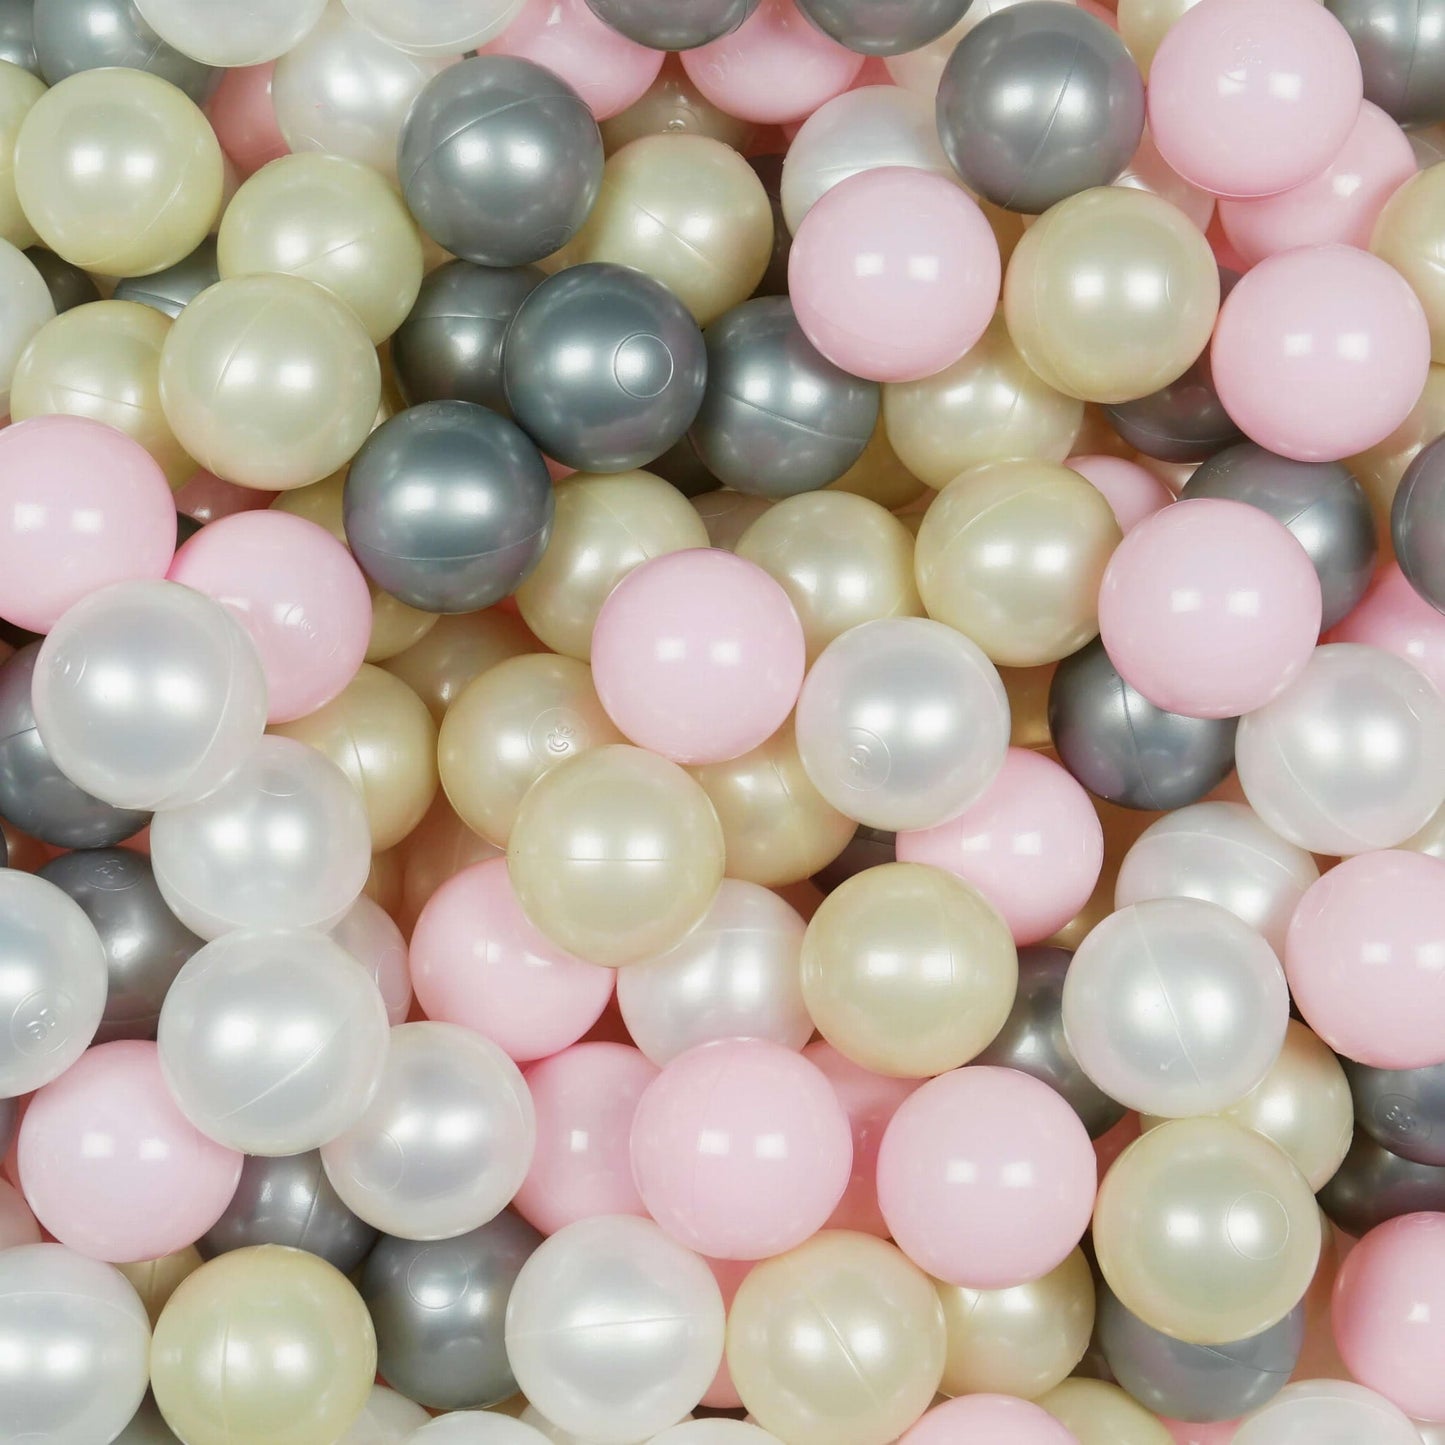 Balles de jeu ø7cm 400 pièces rose clair, or clair, perle, argent